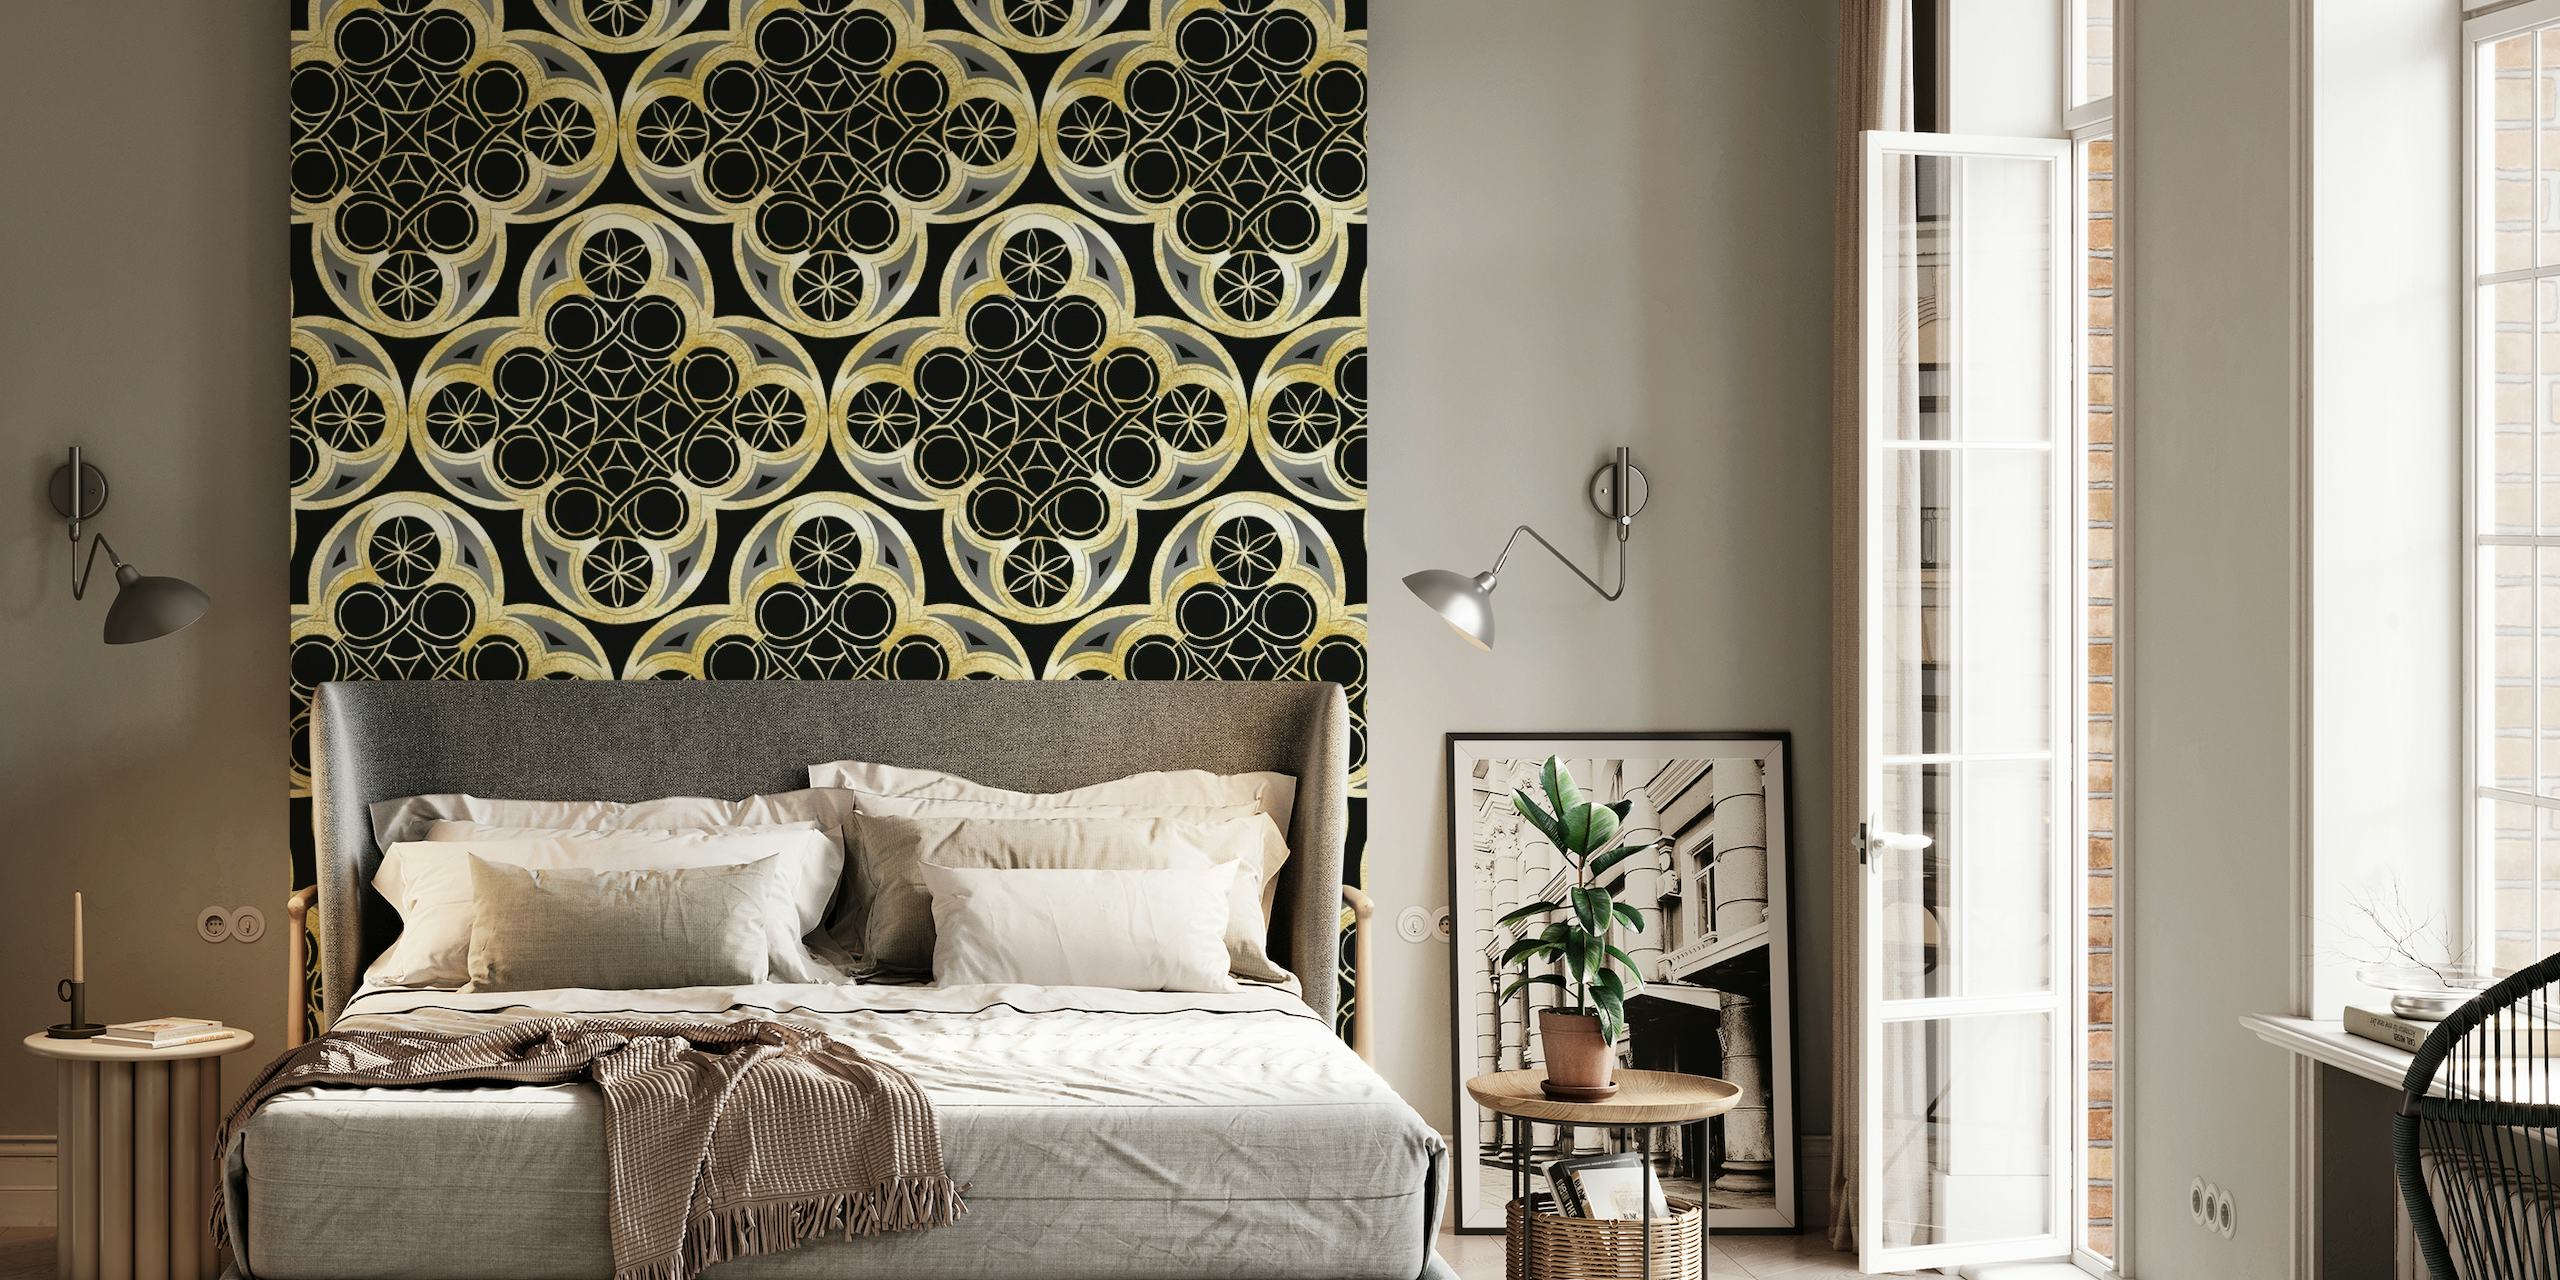 Elegante mural de pared con motivos de azulejos marroquíes en dorado y negro